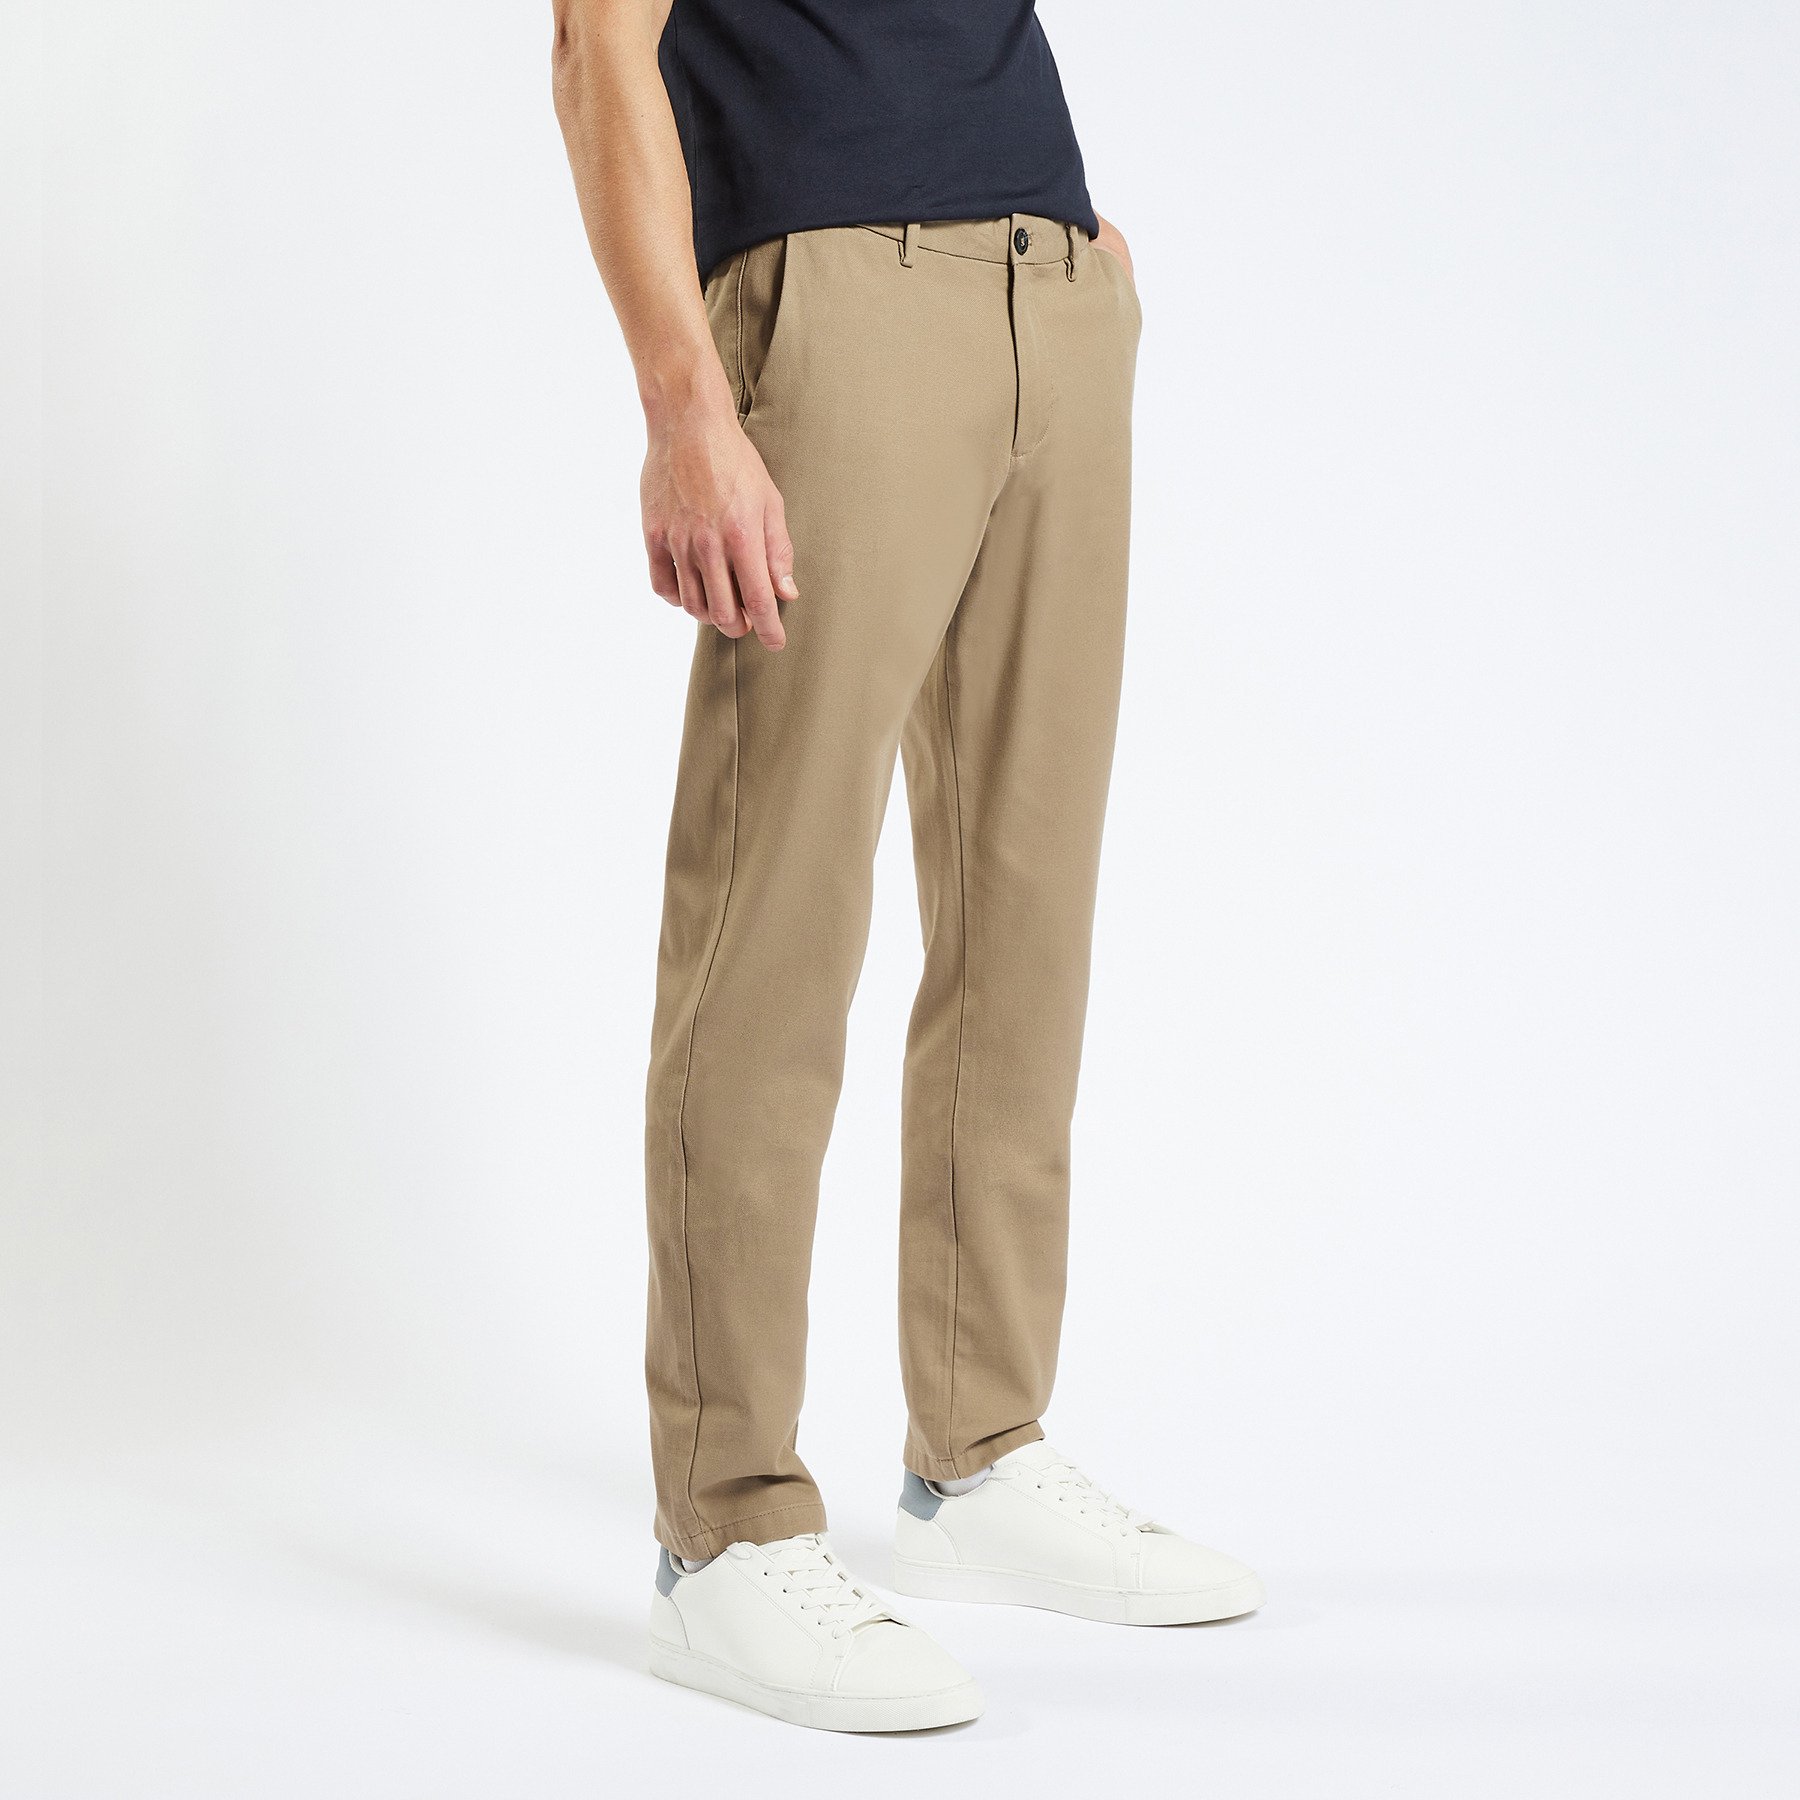 Pantalon chino slim urbain "le parfait by JULES" Beige 34 98% Coton, 2% Elasthanne Homme